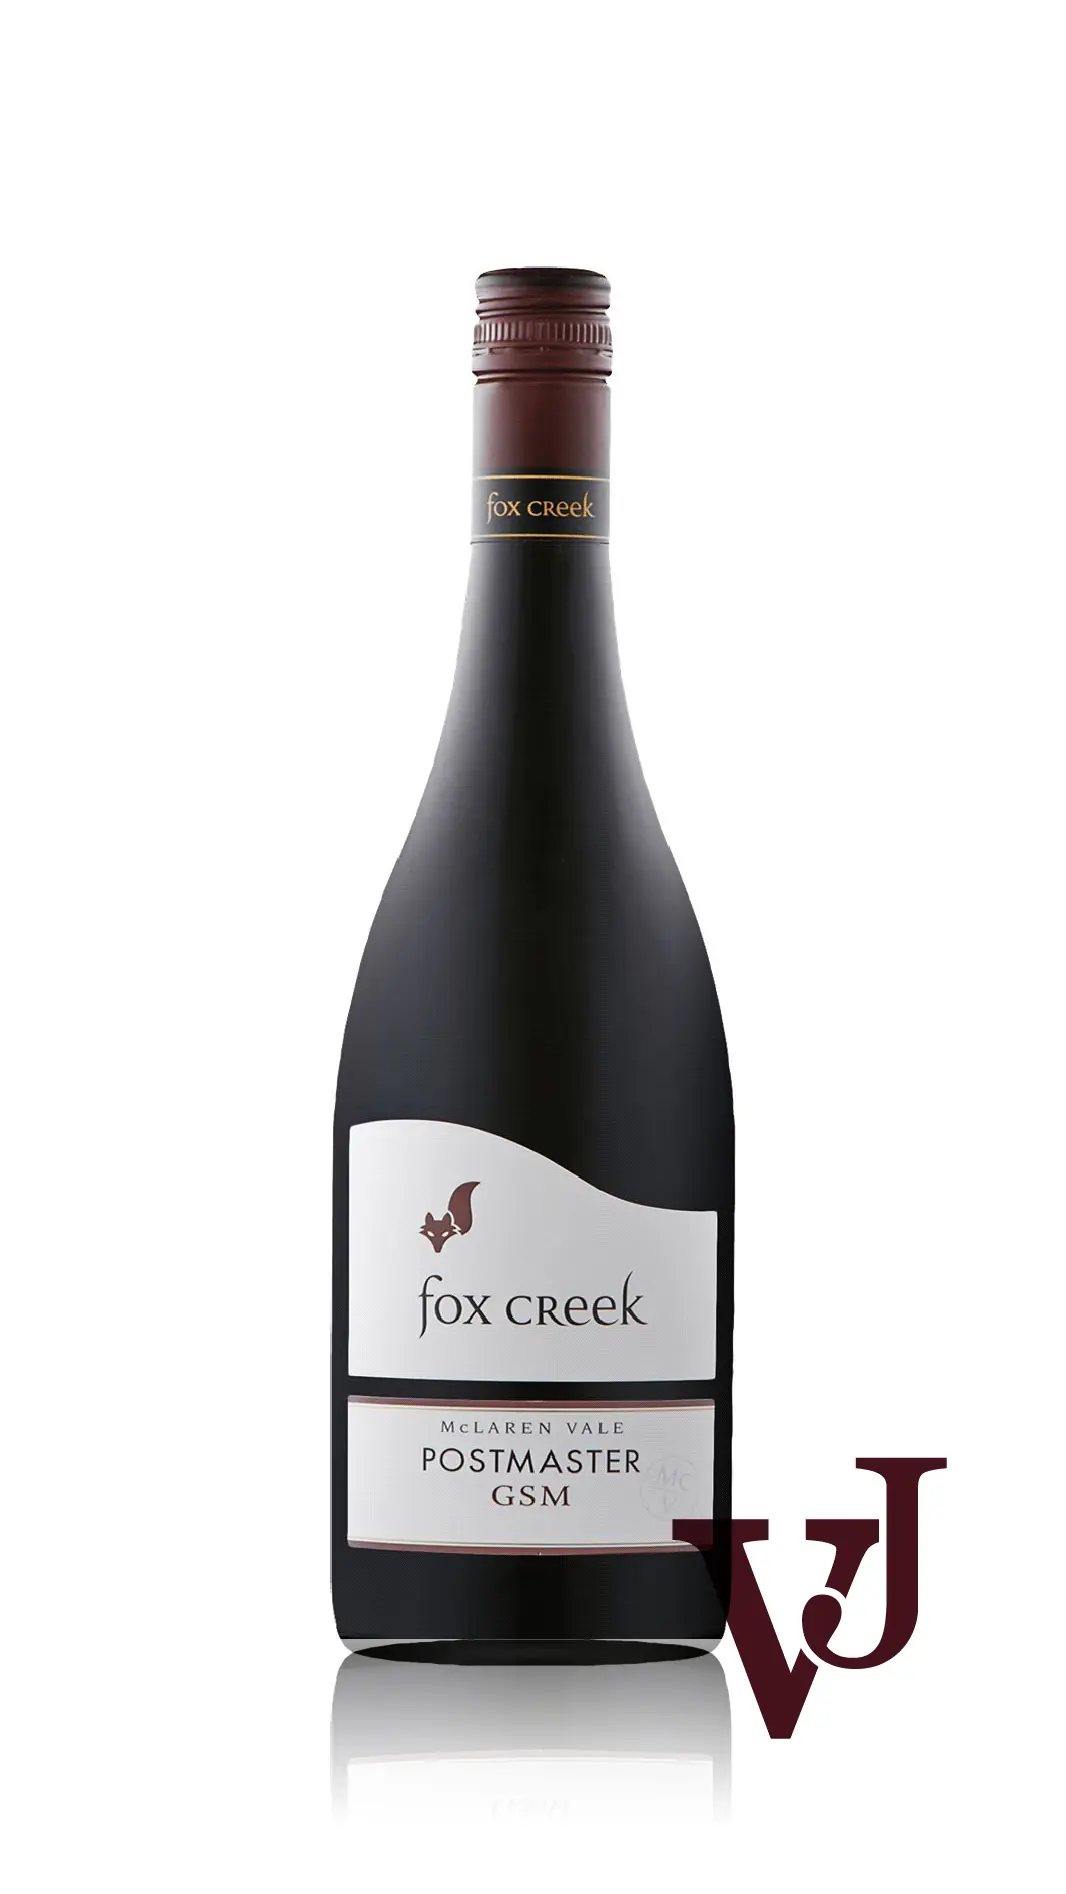 Rött Vin - Fox Creek Postmaster GSM artikel nummer 7241401 från producenten Fox Creek Wines från området Australien - Vinjournalen.se